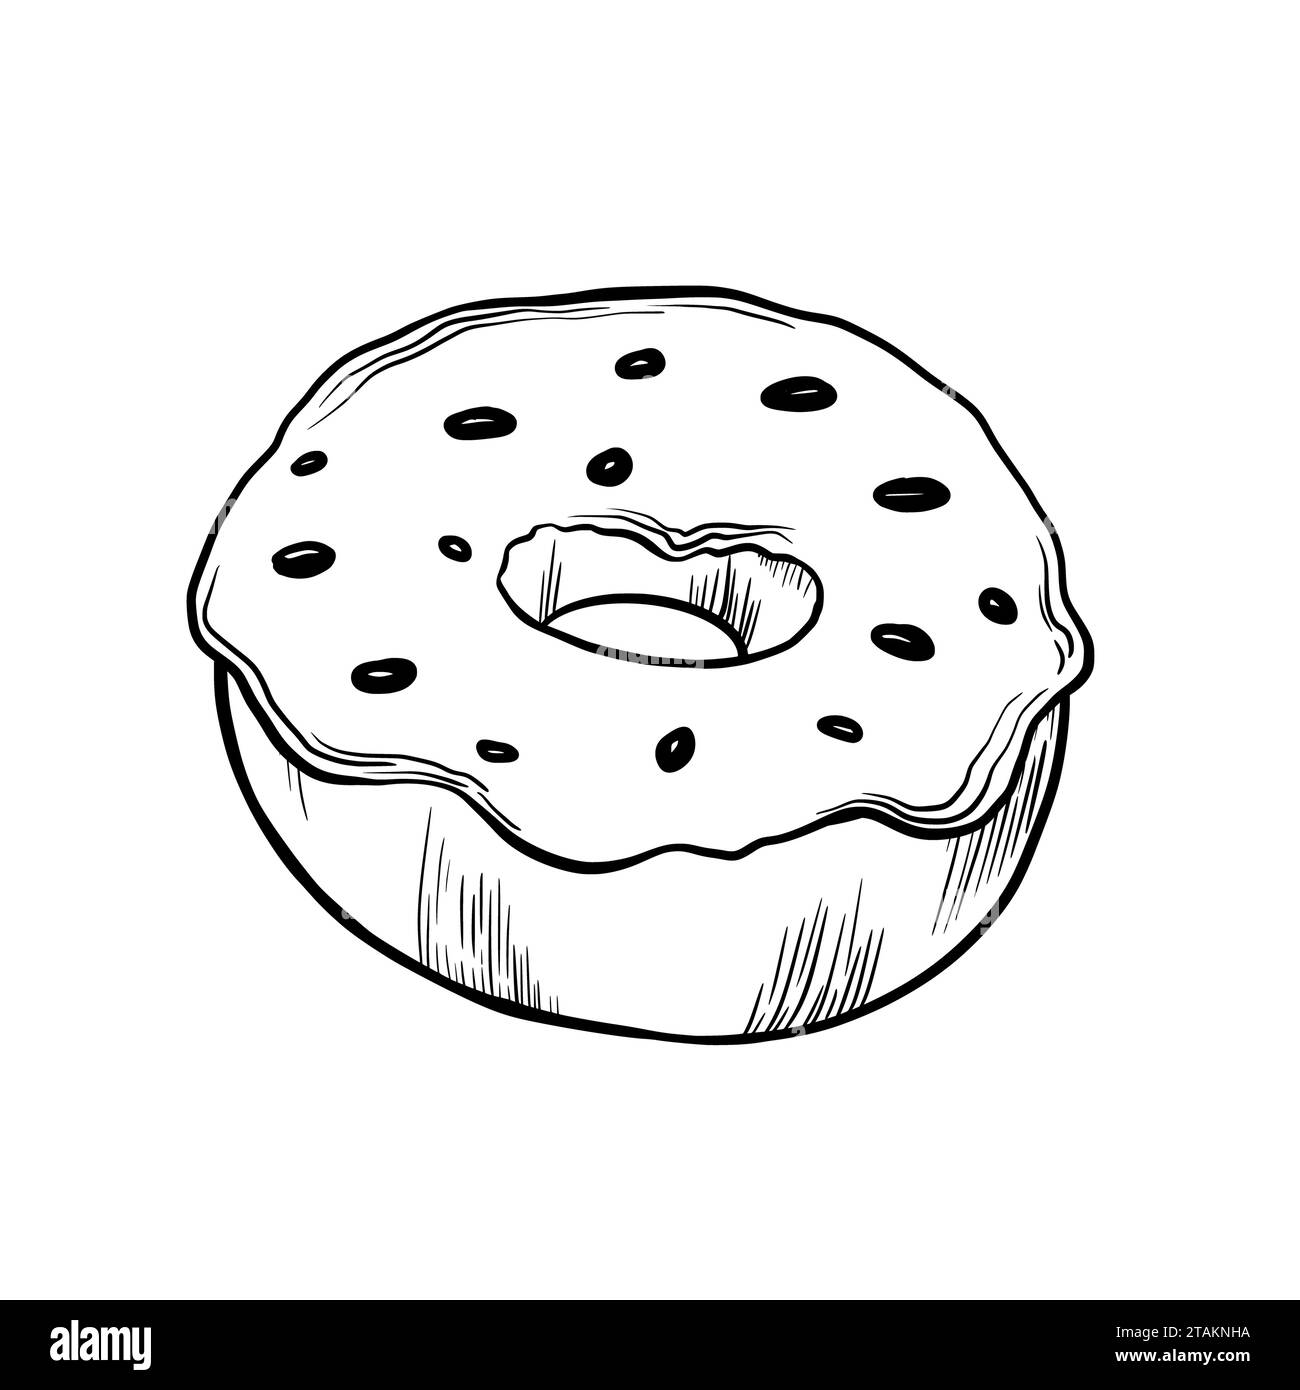 Klassischer Donut mit Glasur und Süßwarendekoration. Vektorabbildung. Grapgischer STYLE. Handgezeichnet in einem einfachen minimalistischen Stil. Kann für verwendet werden Stock Vektor